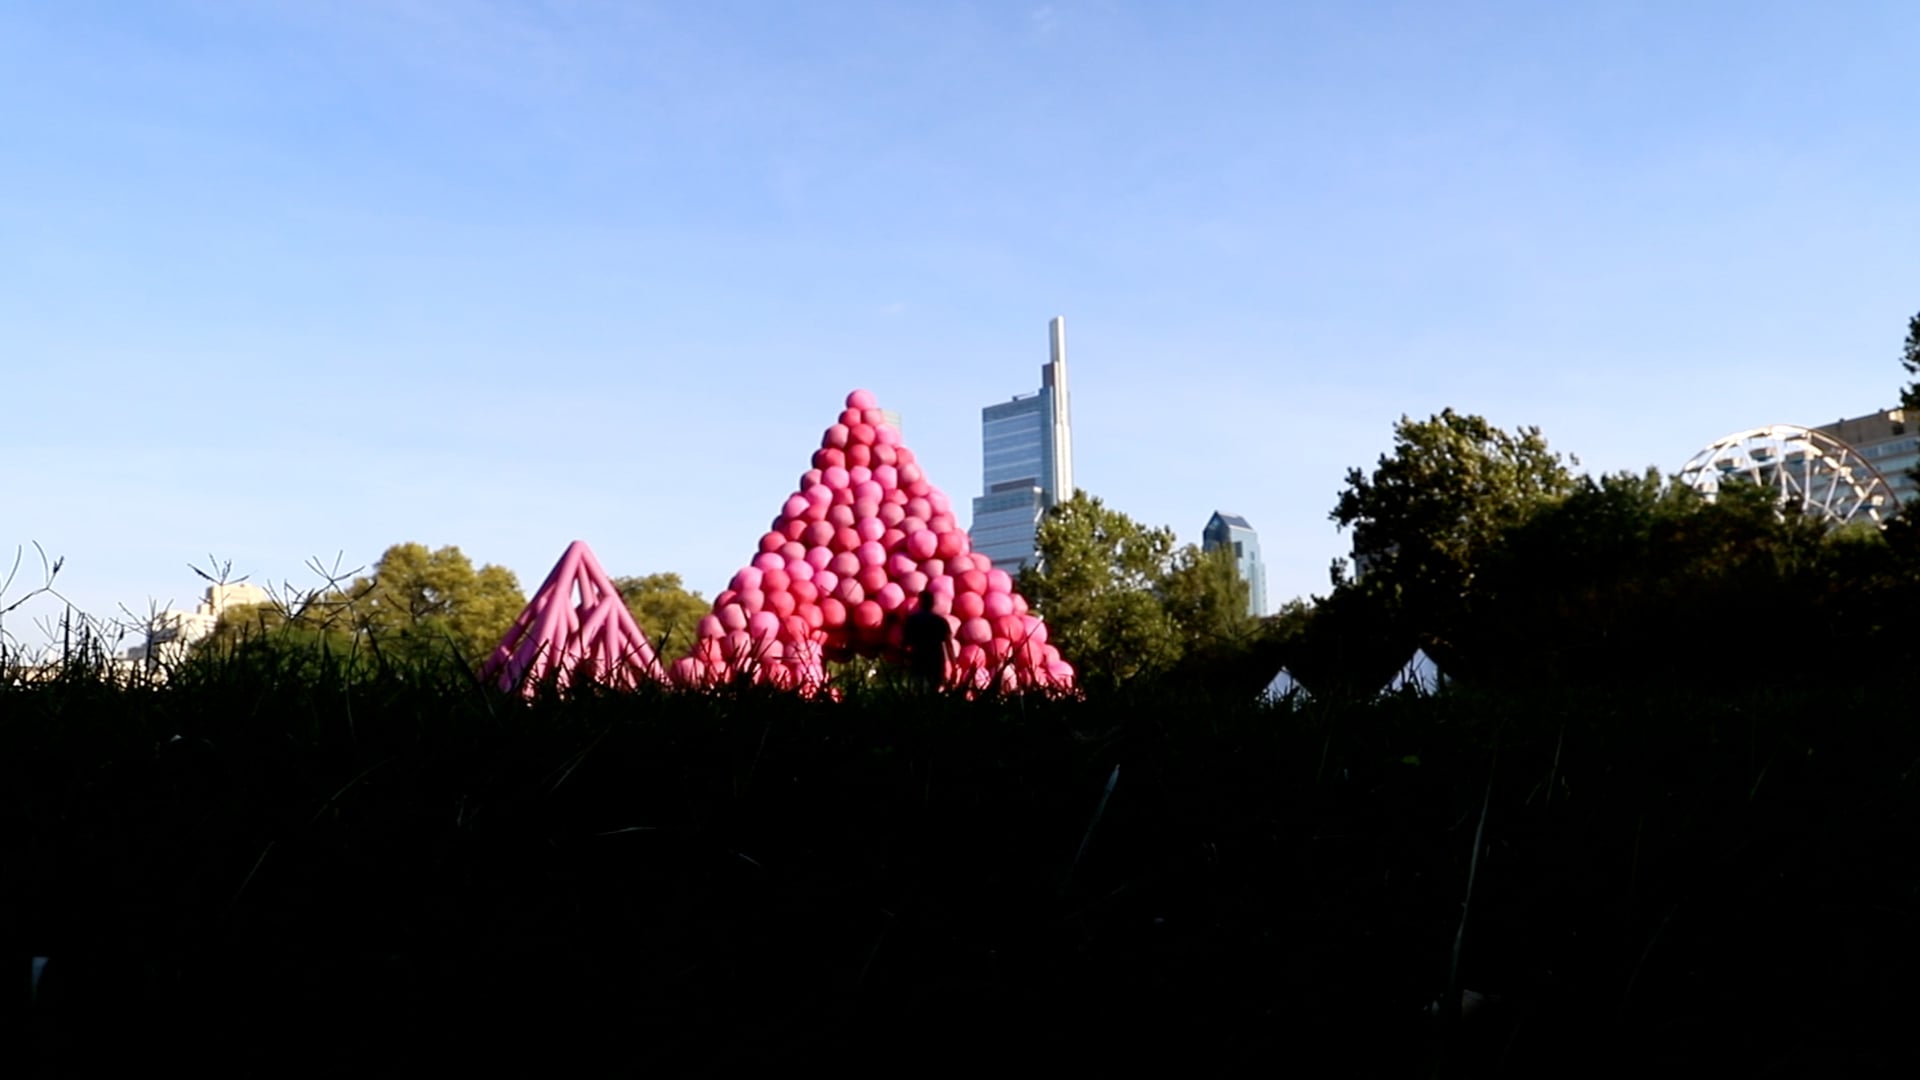 pyramide de ballons roses de cyril lancelin